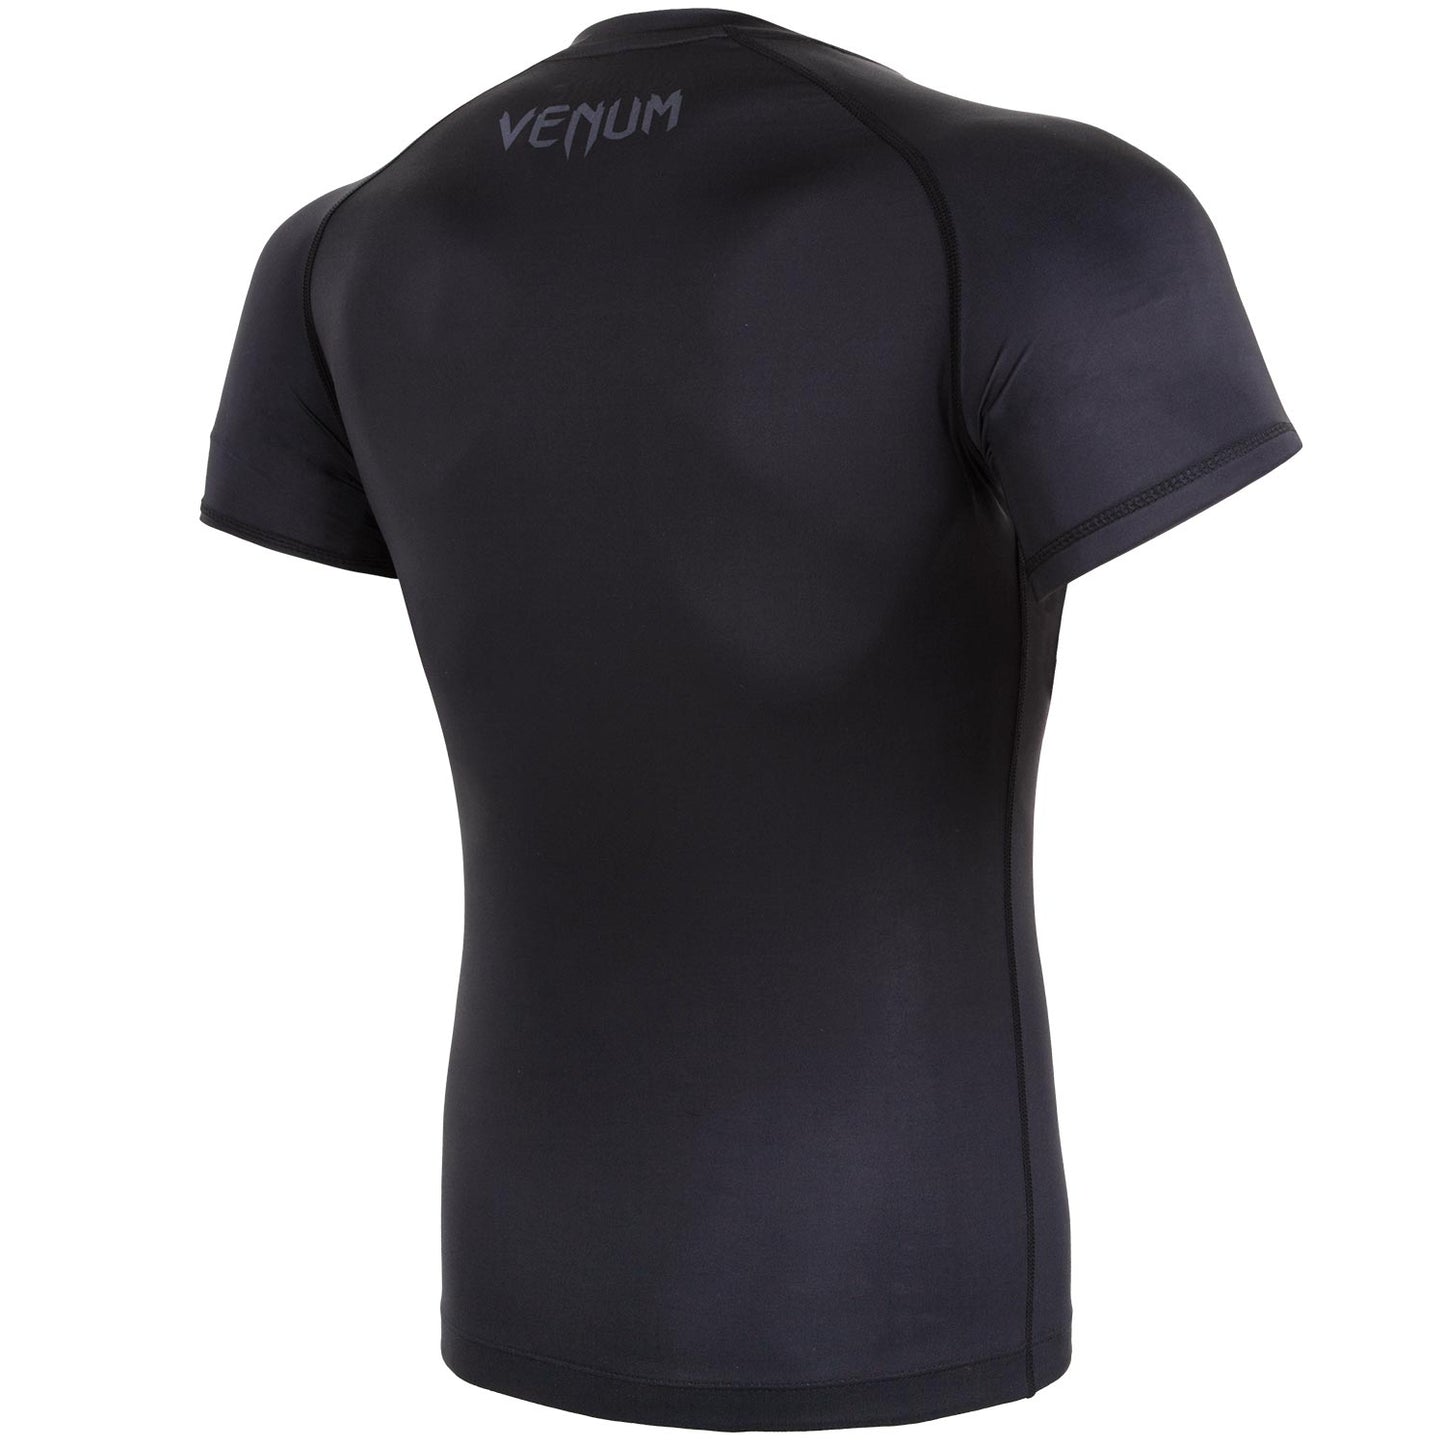 Camiseta de Compresión Venum Contender 3.0 - Mangas Cortas - Negro/Gris